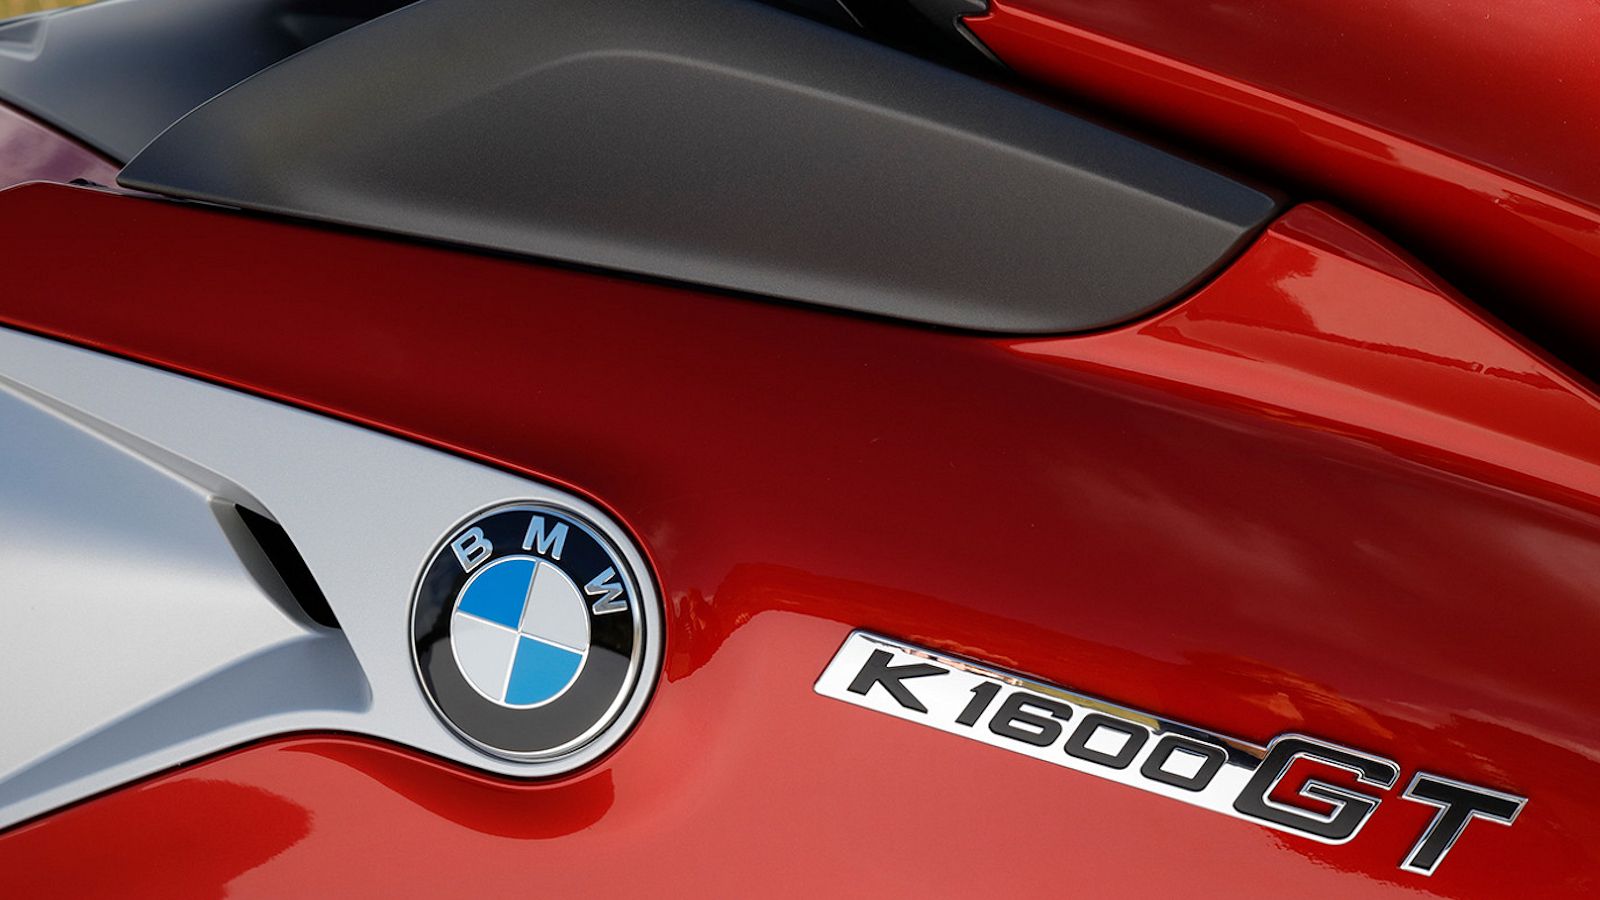 2017 - 2020 BMW K 1600 GT